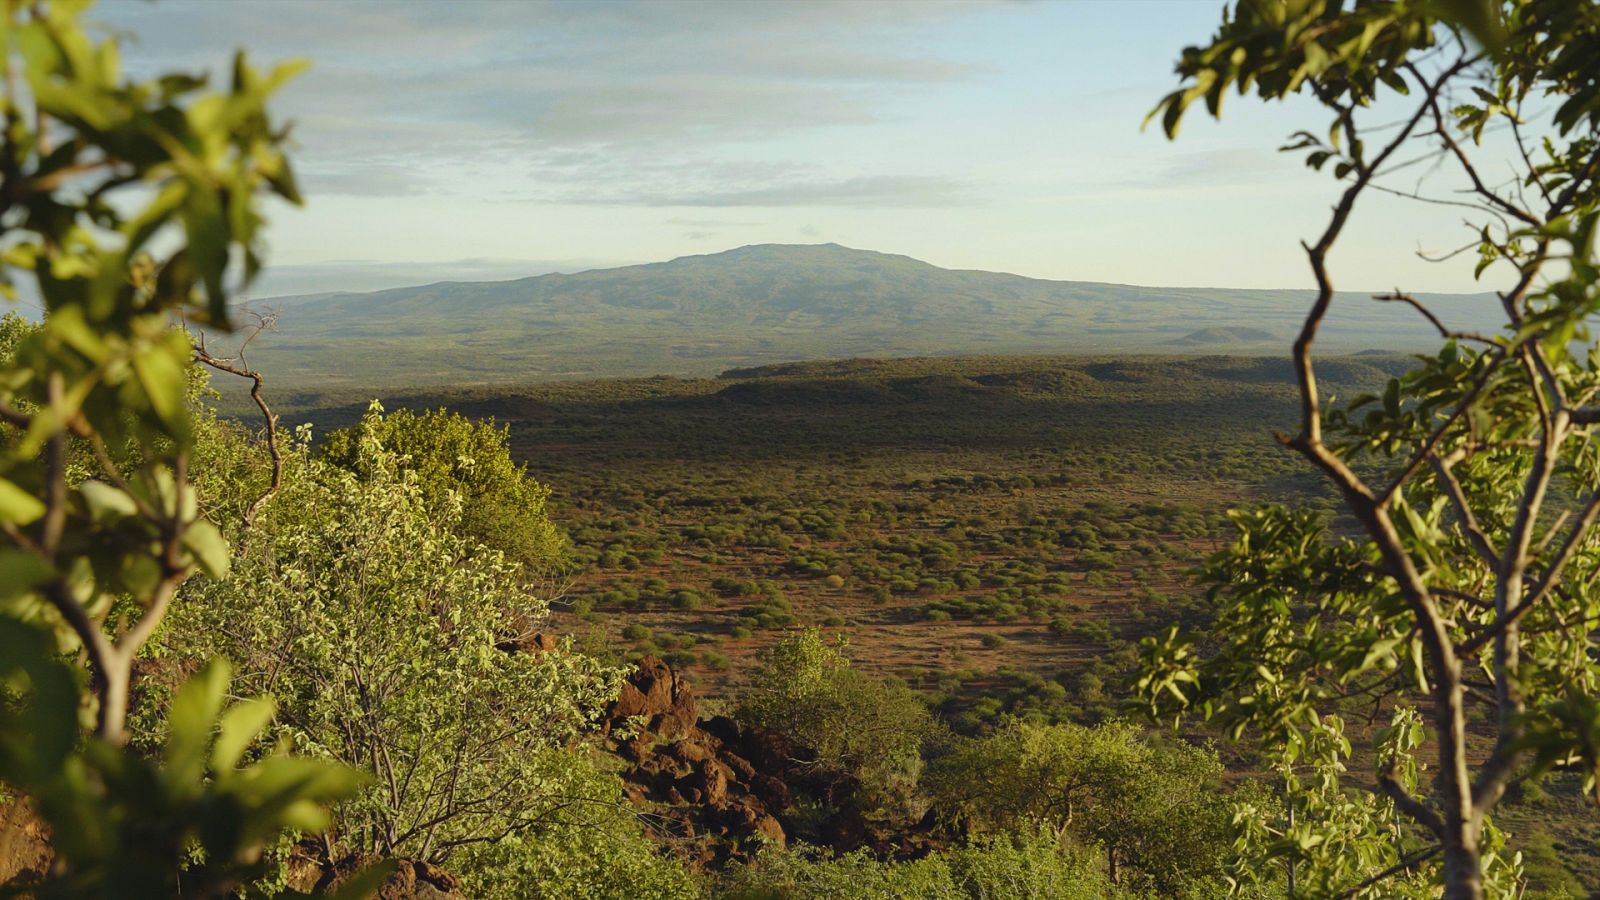 Somos documentales - El mundo perdido de África: el monte Suswa - ver ahora